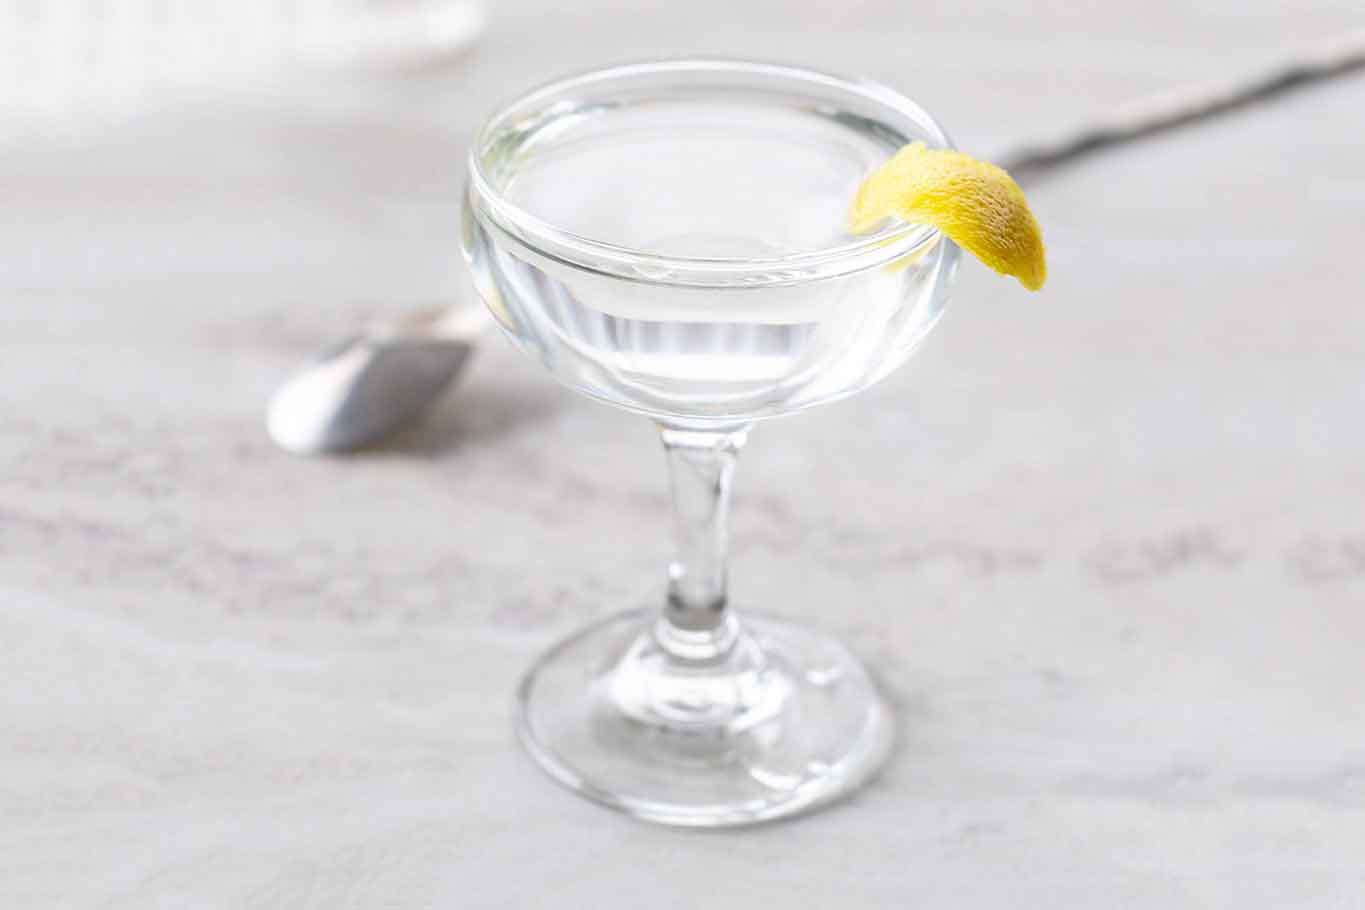 Martini Capri gin